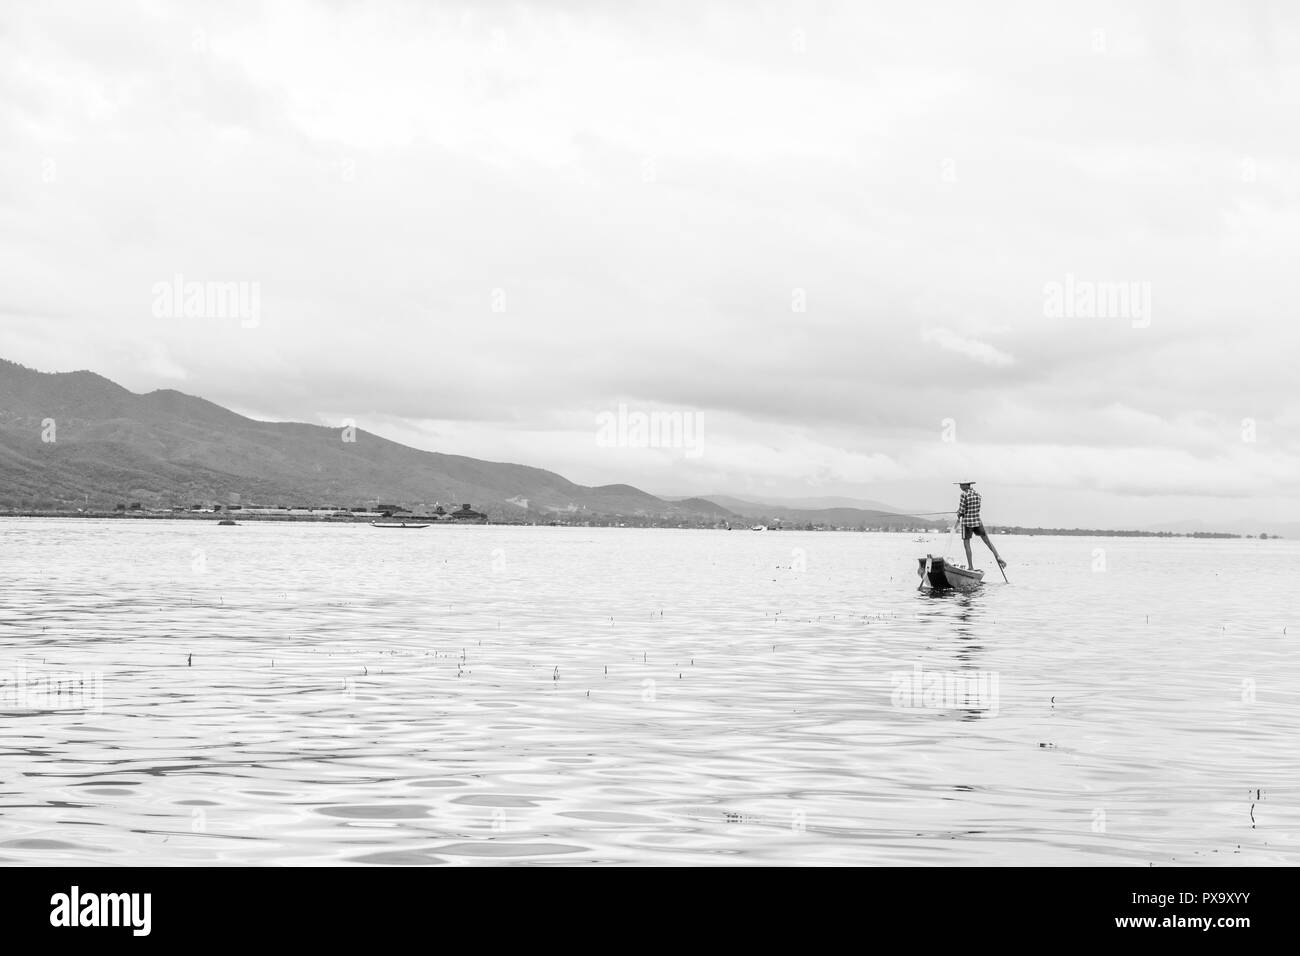 Reisen lokale junge burmesen männliche Fischer tragen geprüft, t-shirt, mit Stick und net zu fischen, Balancieren auf einem Fuß auf dem Boot, Inle Lake Myanmar, Birma Stockfoto